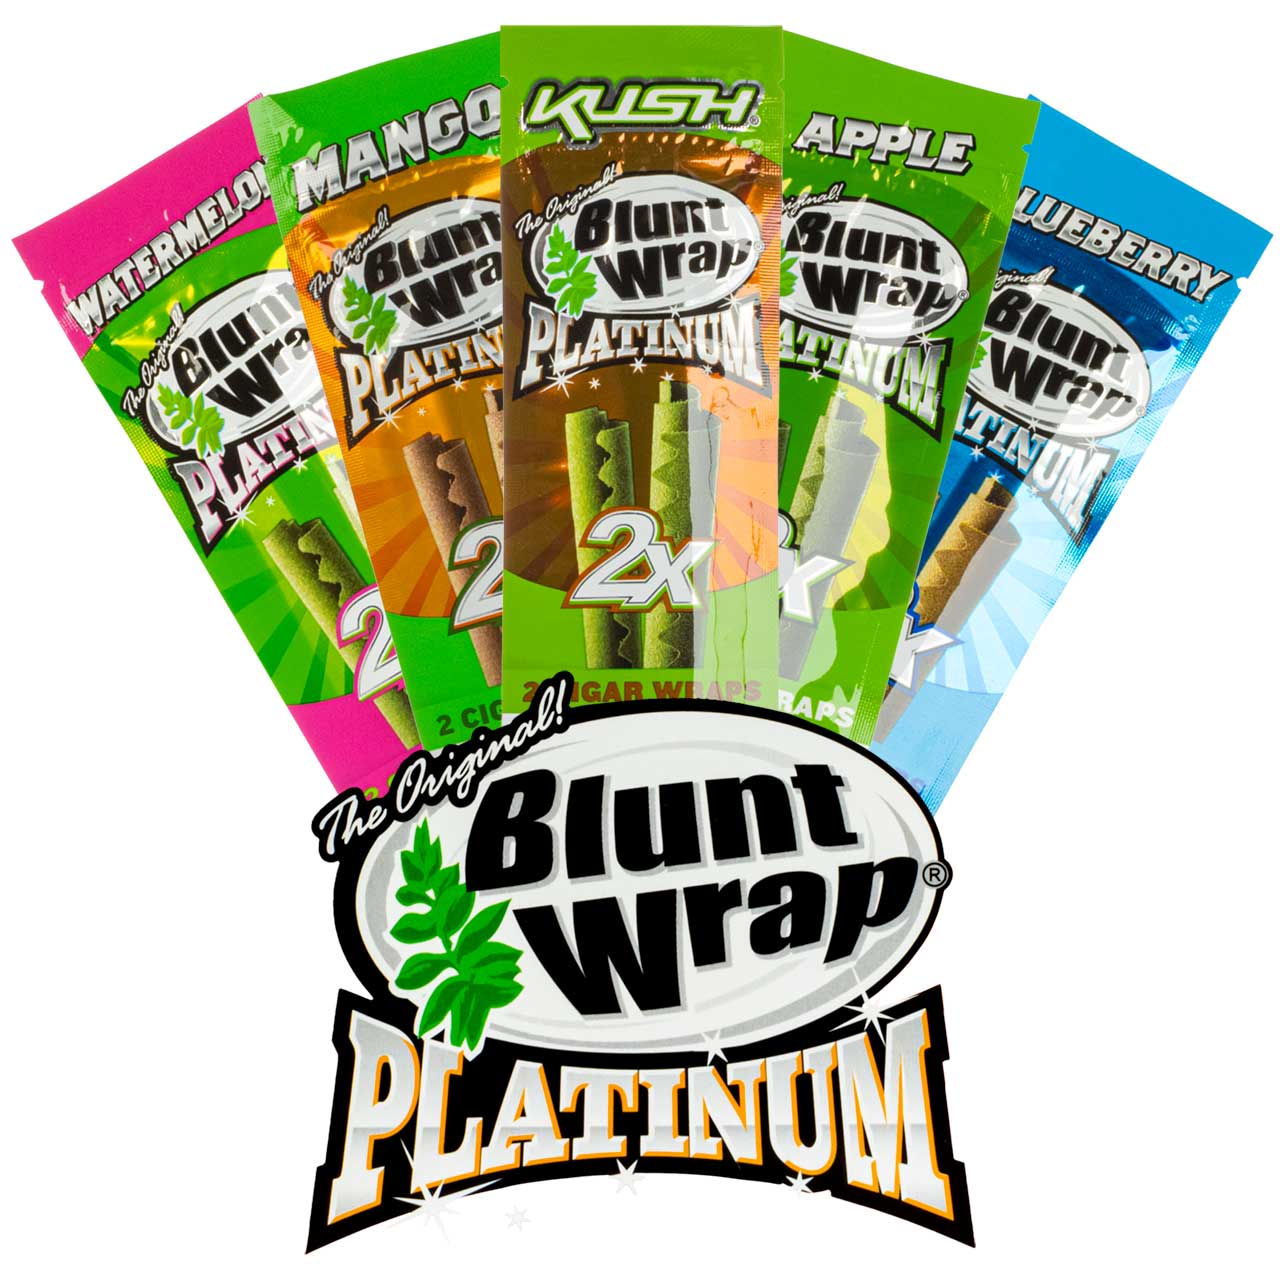 Blunt Wrap - Double platinum